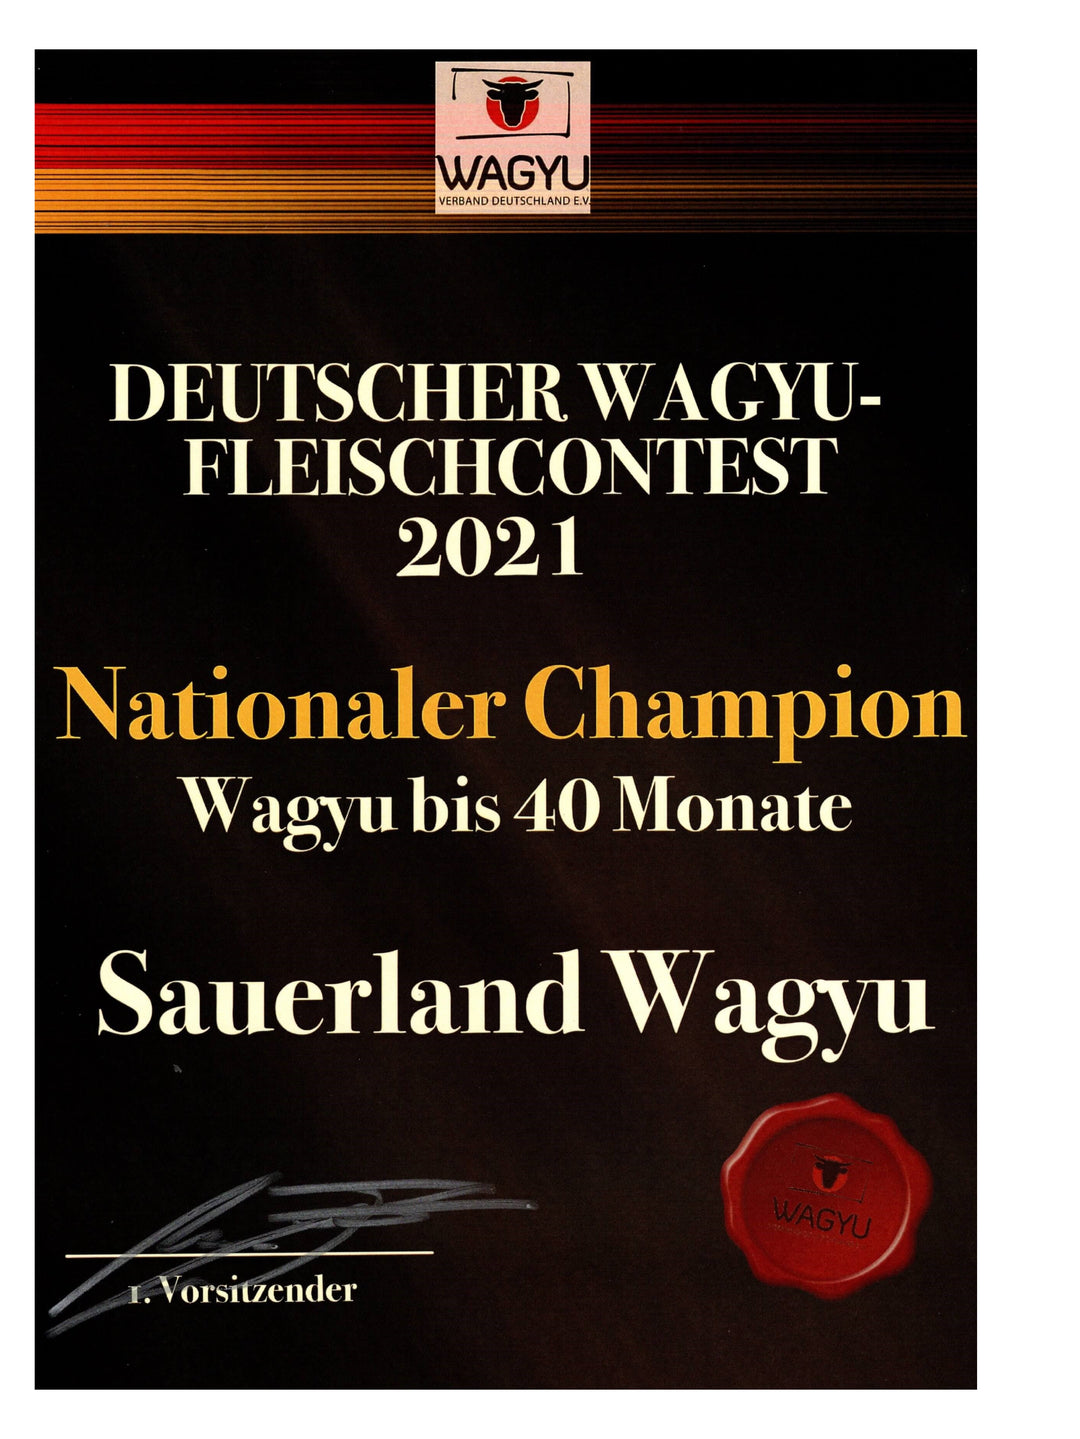 wagyu-fleisch-contest